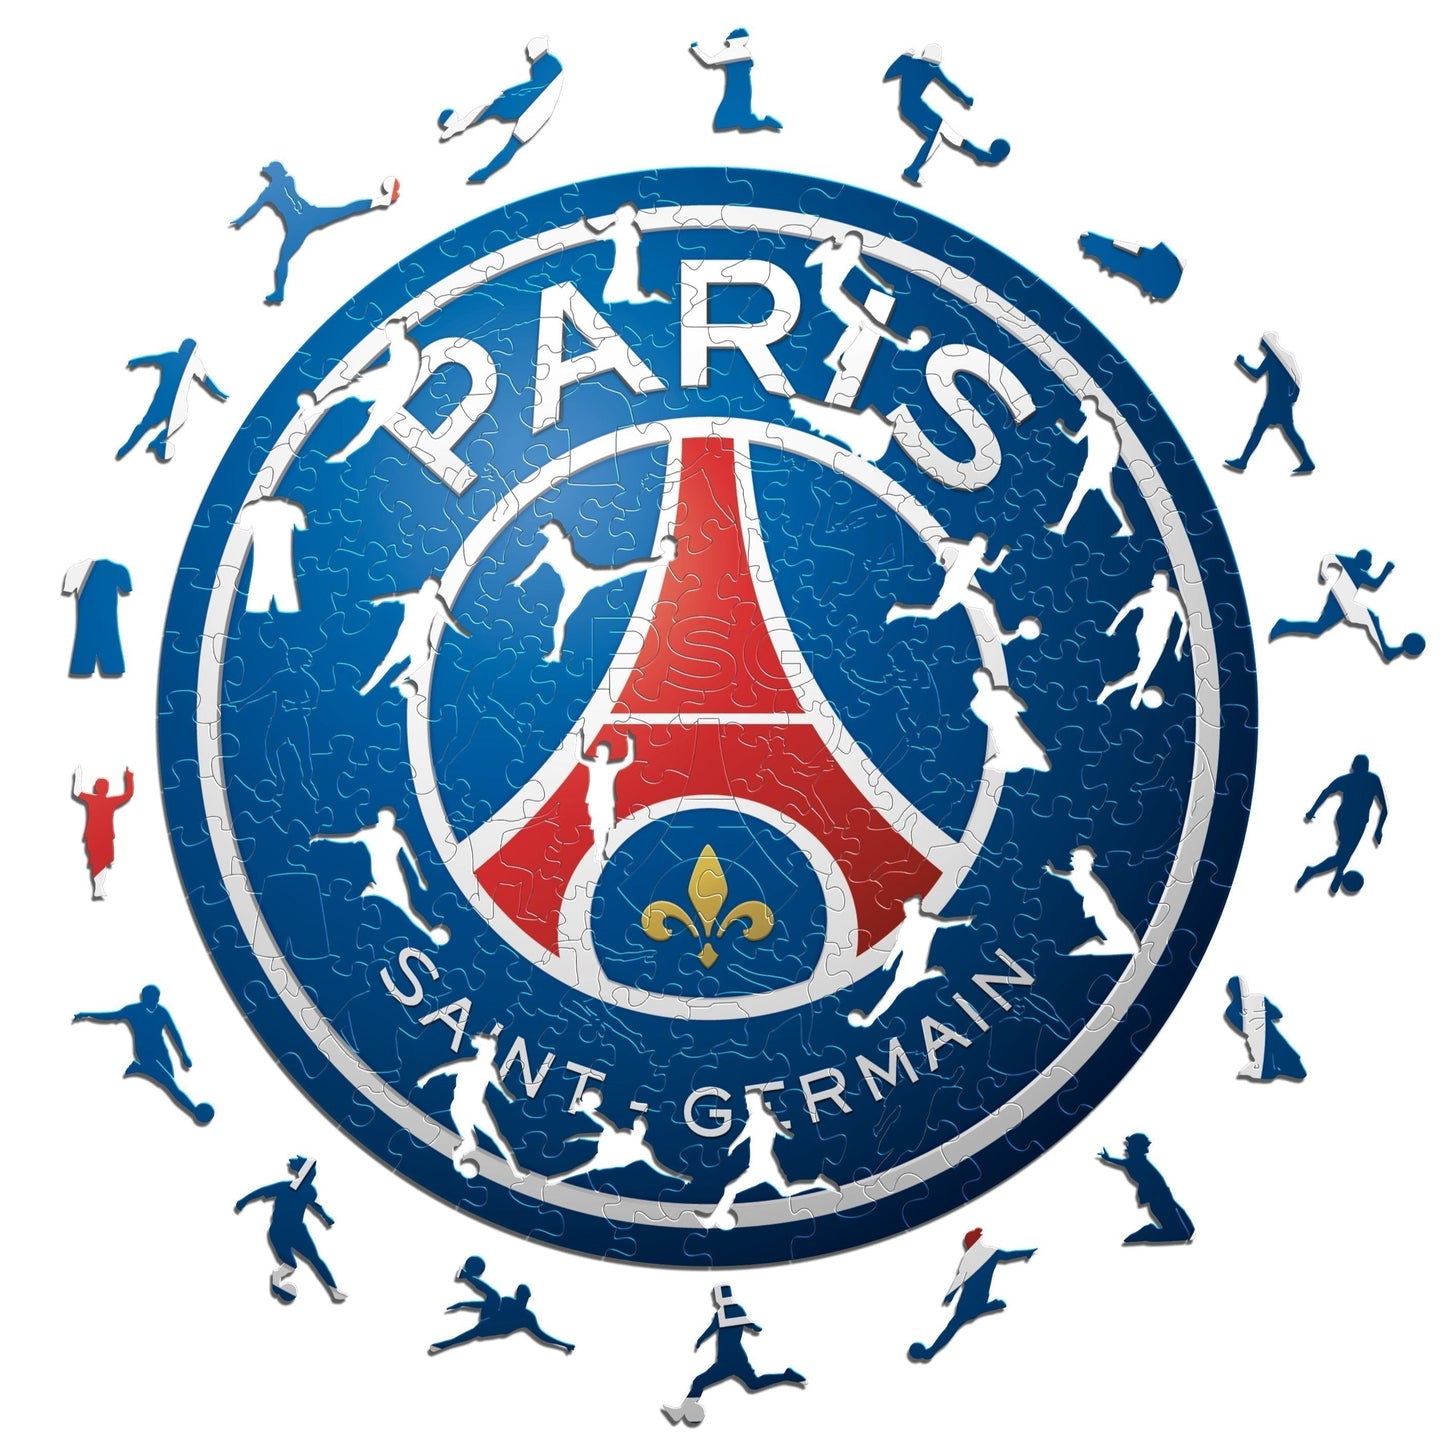 3 PACK PSG FC® Logo + Neymar Jr. + Kylian Mbappé